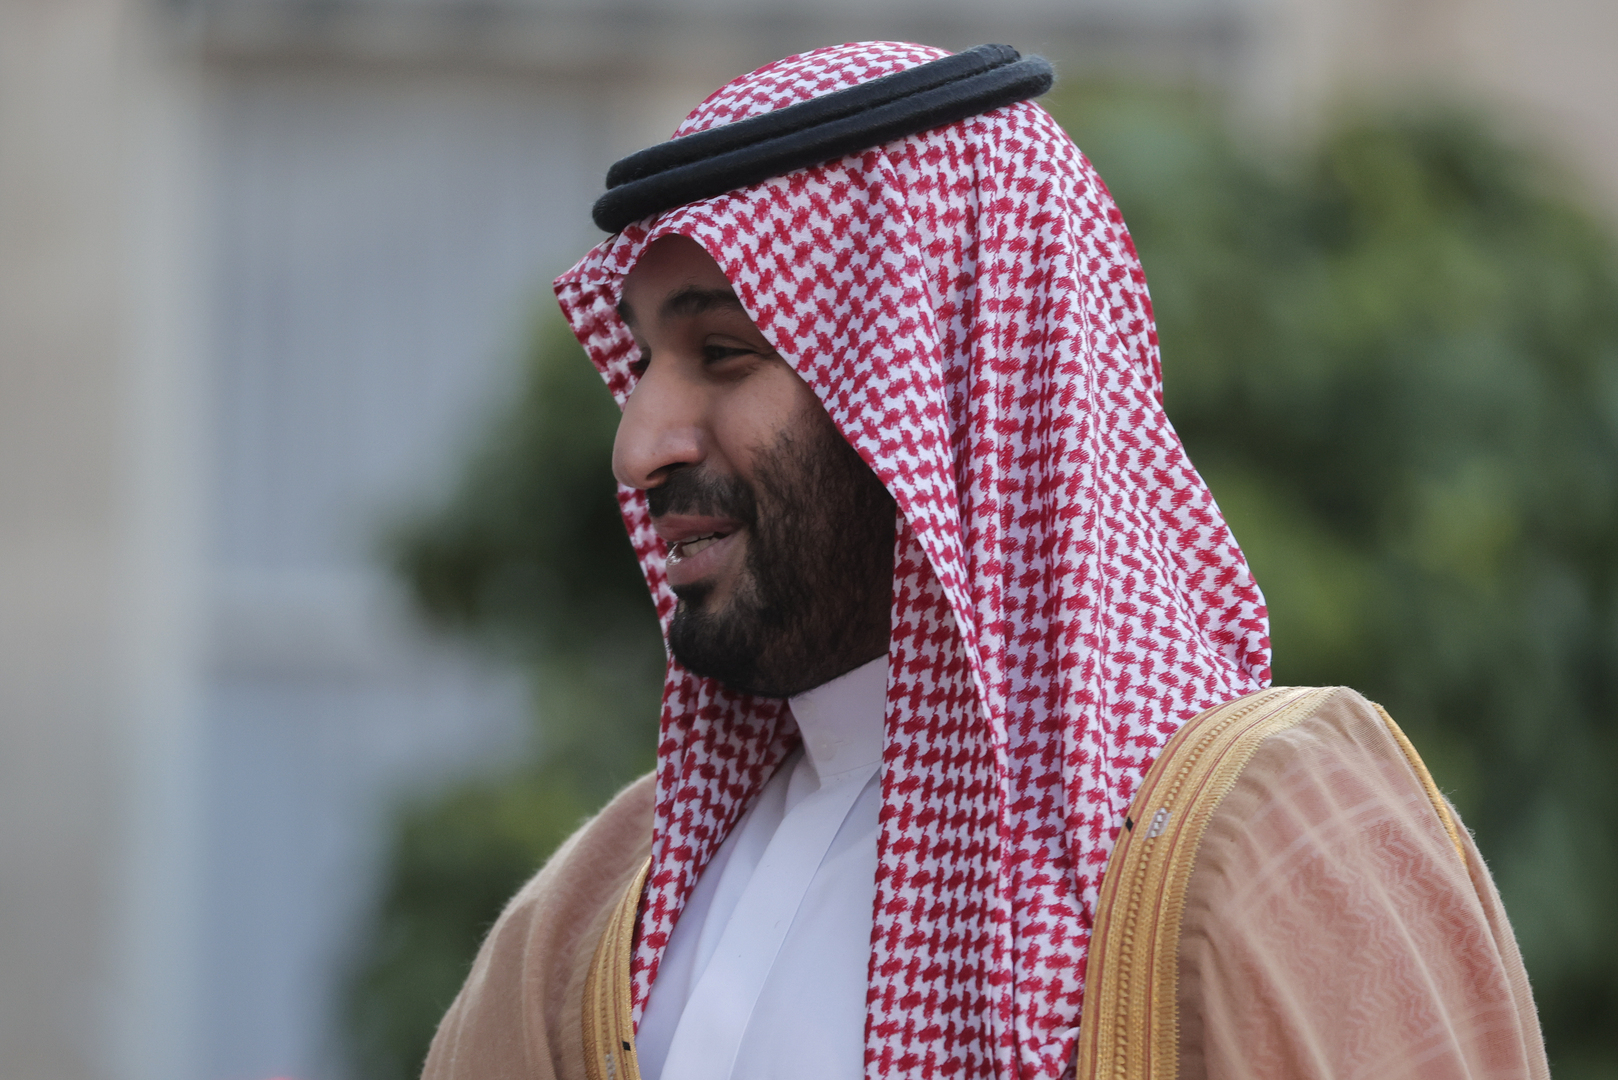 وزير النفط الكويتي: حقل الدرة حق حصري للسعودية والكويت وإيران هي من يجب أن تبادر للتفاوض